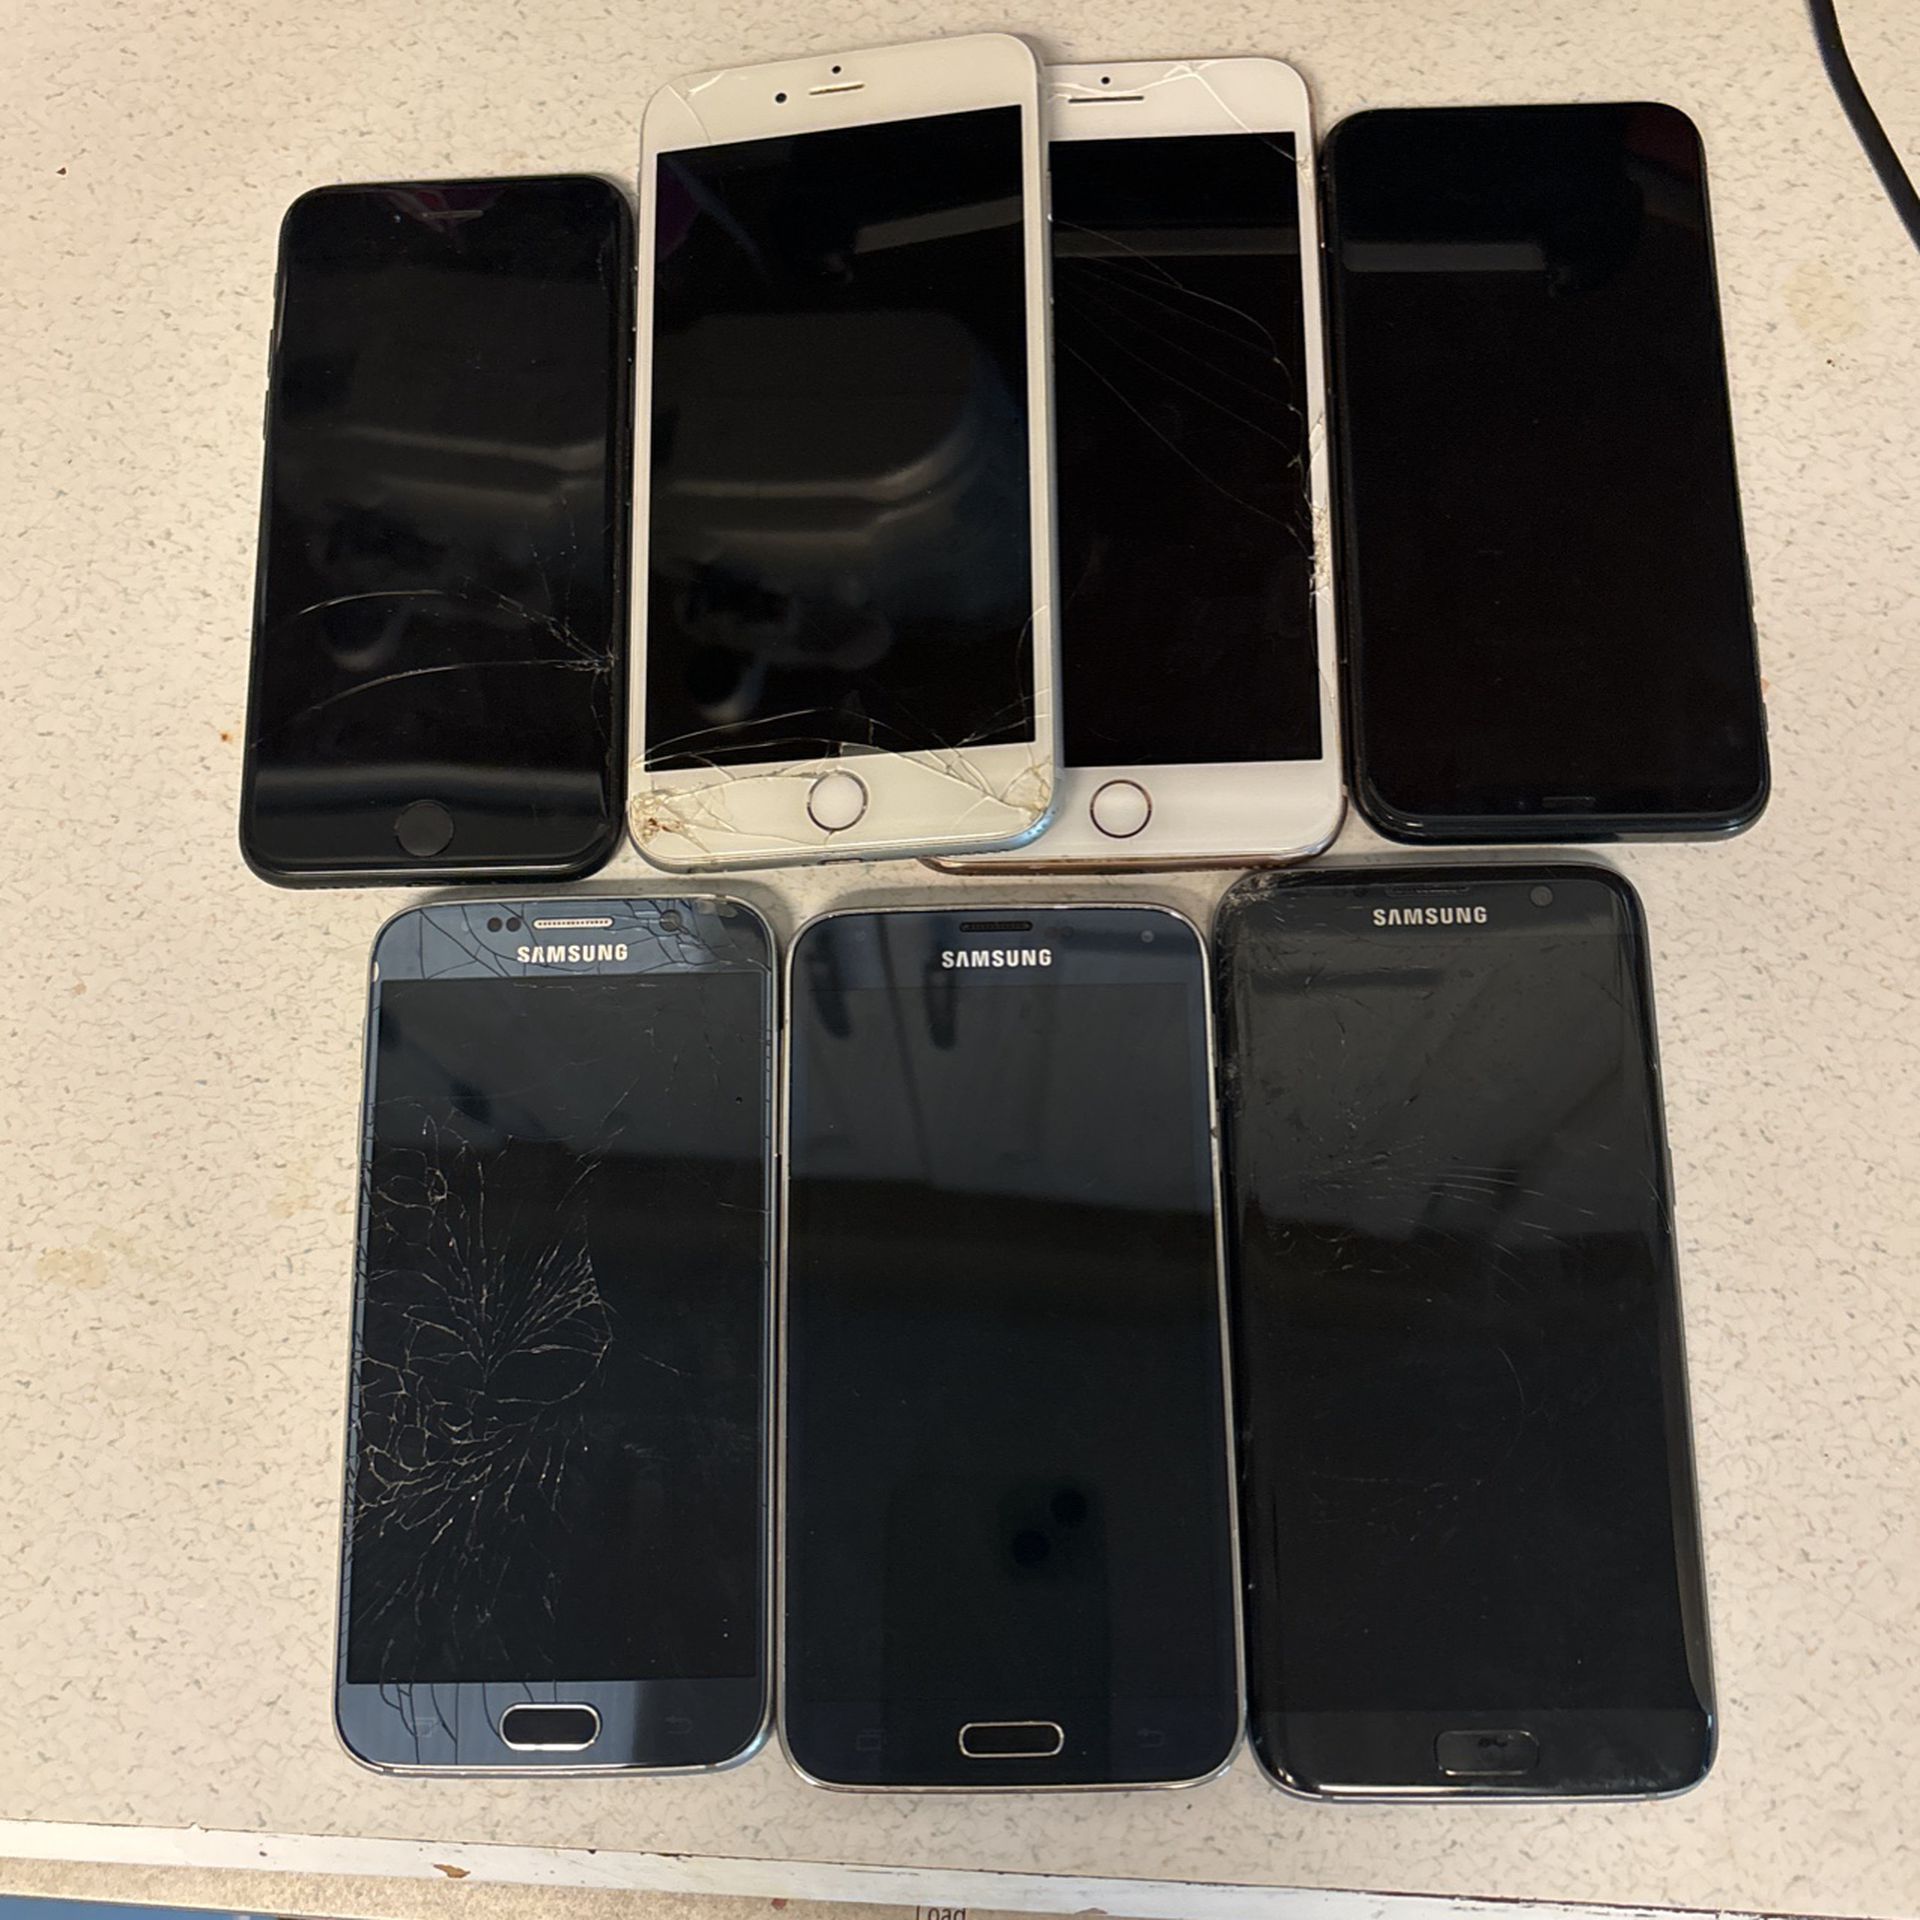 Lot Of Seven Phones iPhones (4), Samsung Phones (3)